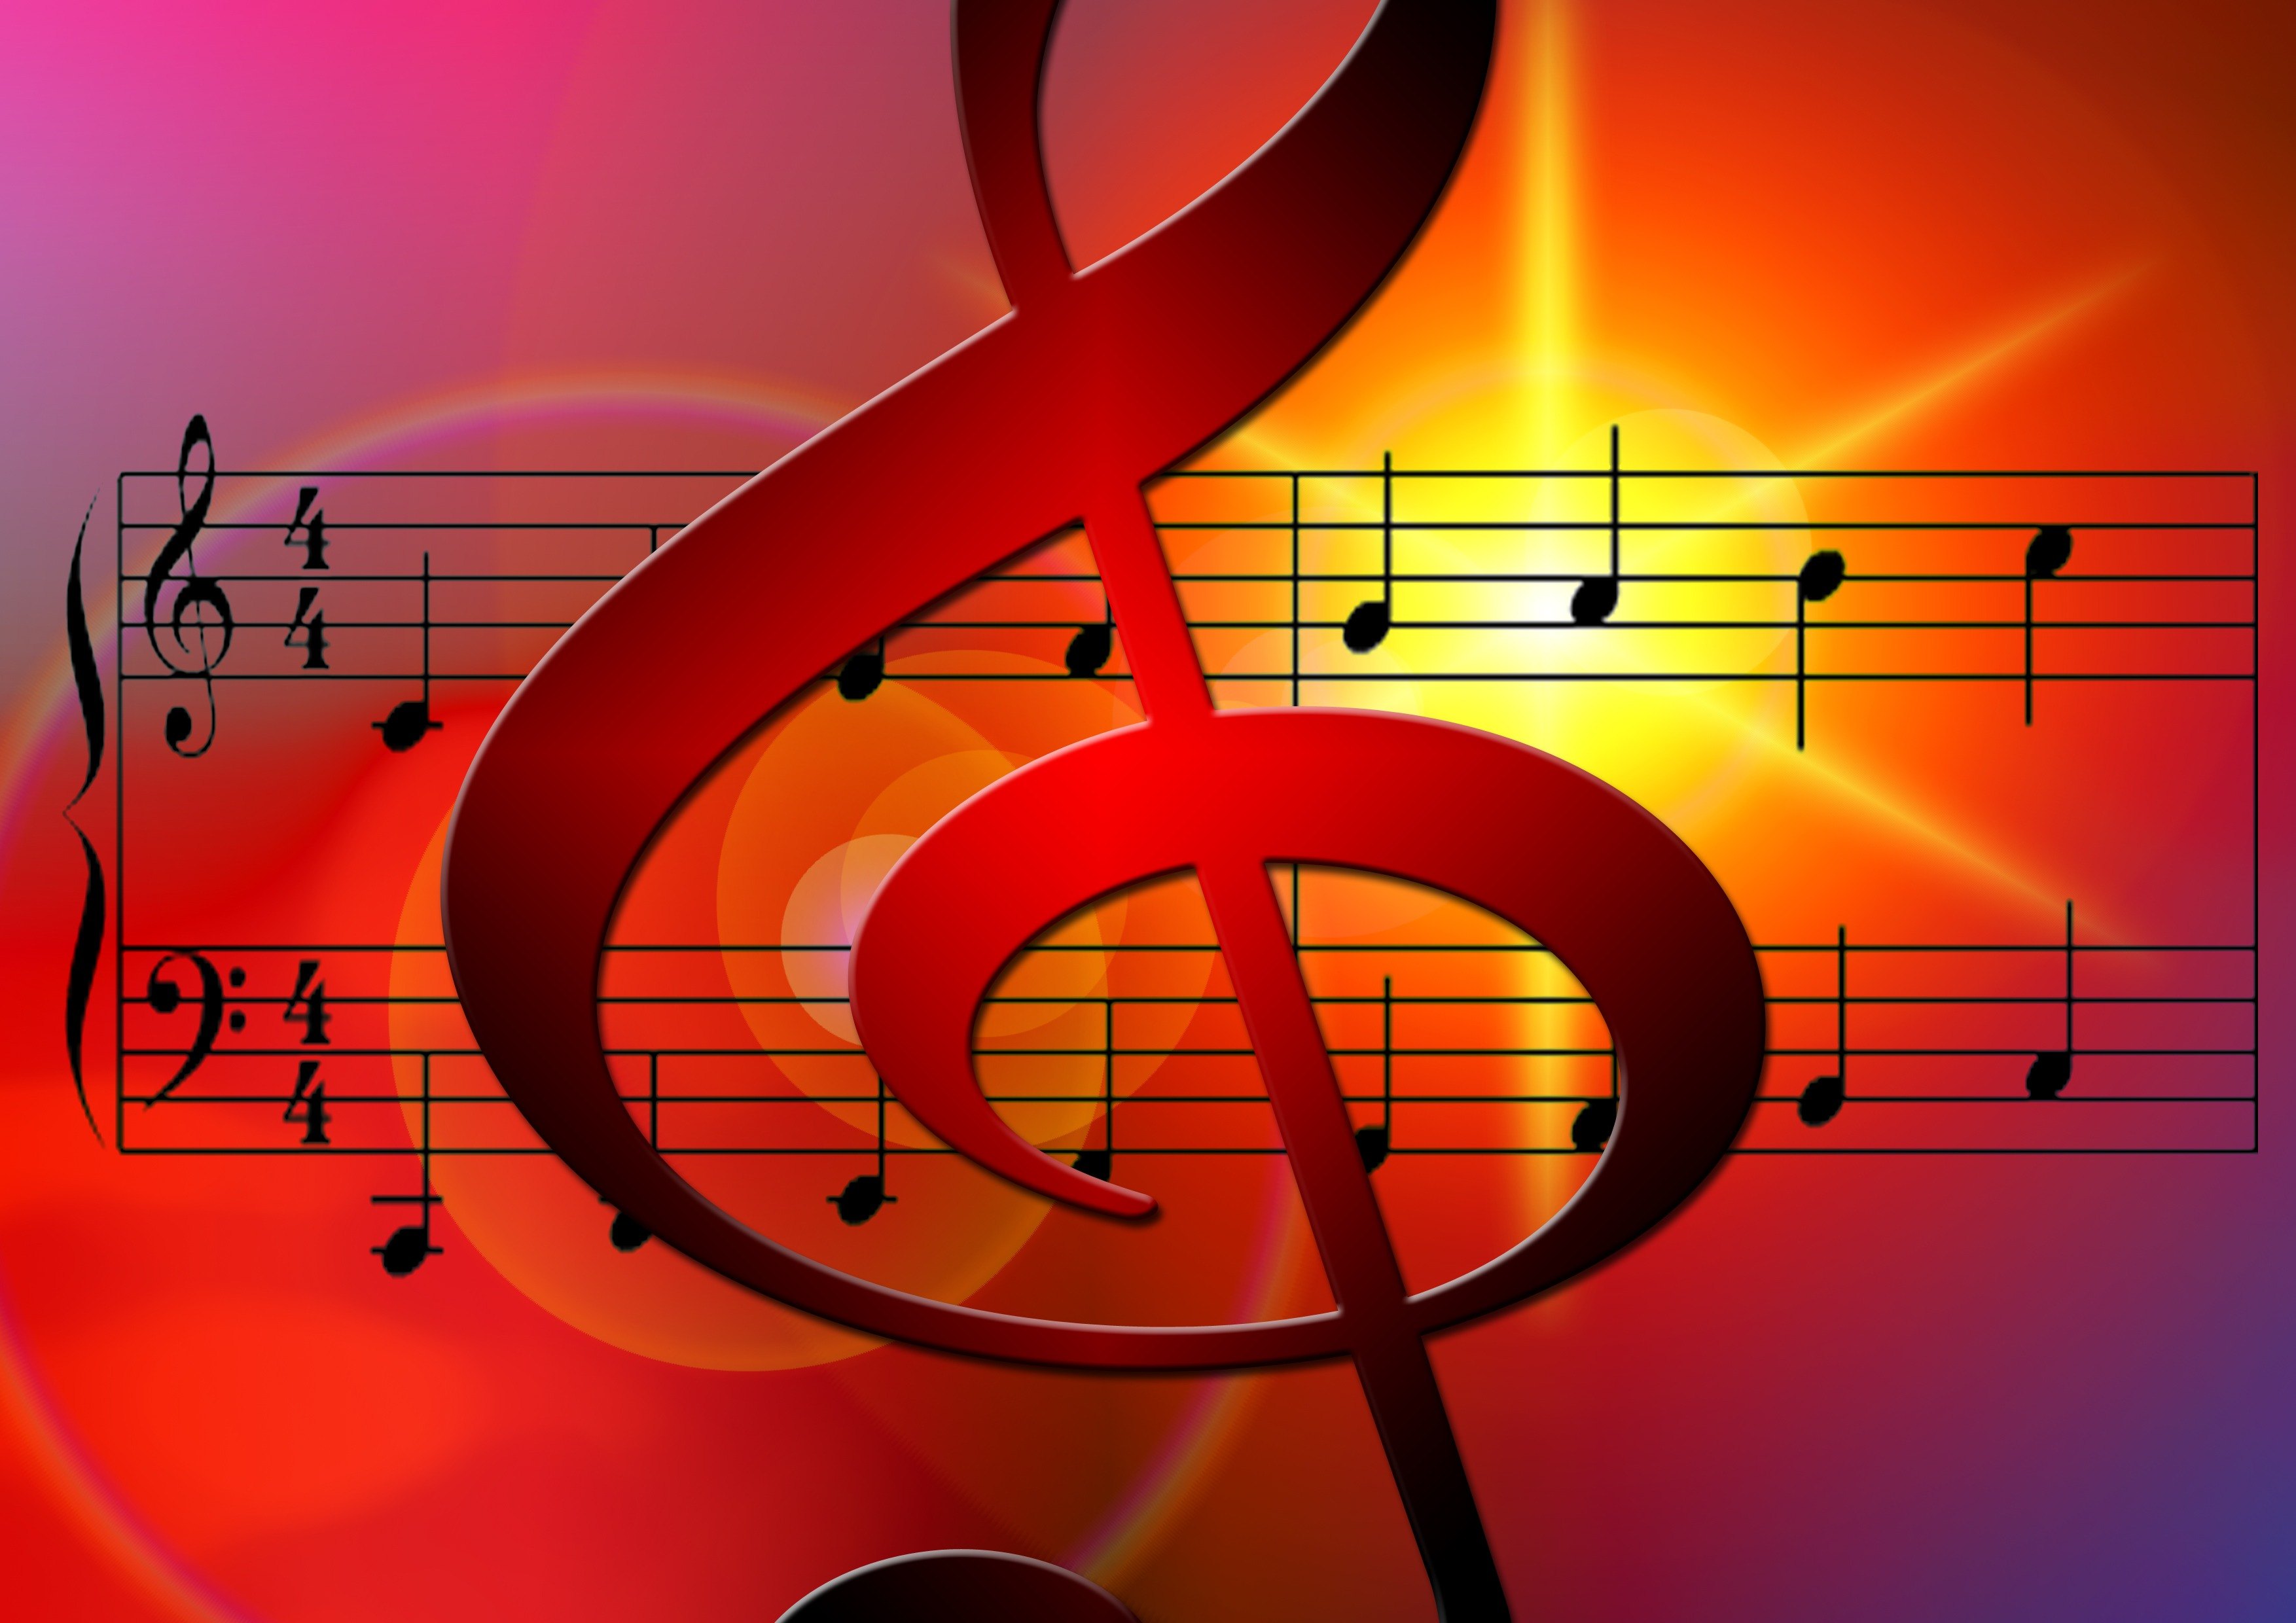 Musica que musica. Музыкальный фон. Музыкальные ключи. Музыкальные Ноты. Картинки на музыкальную тему.